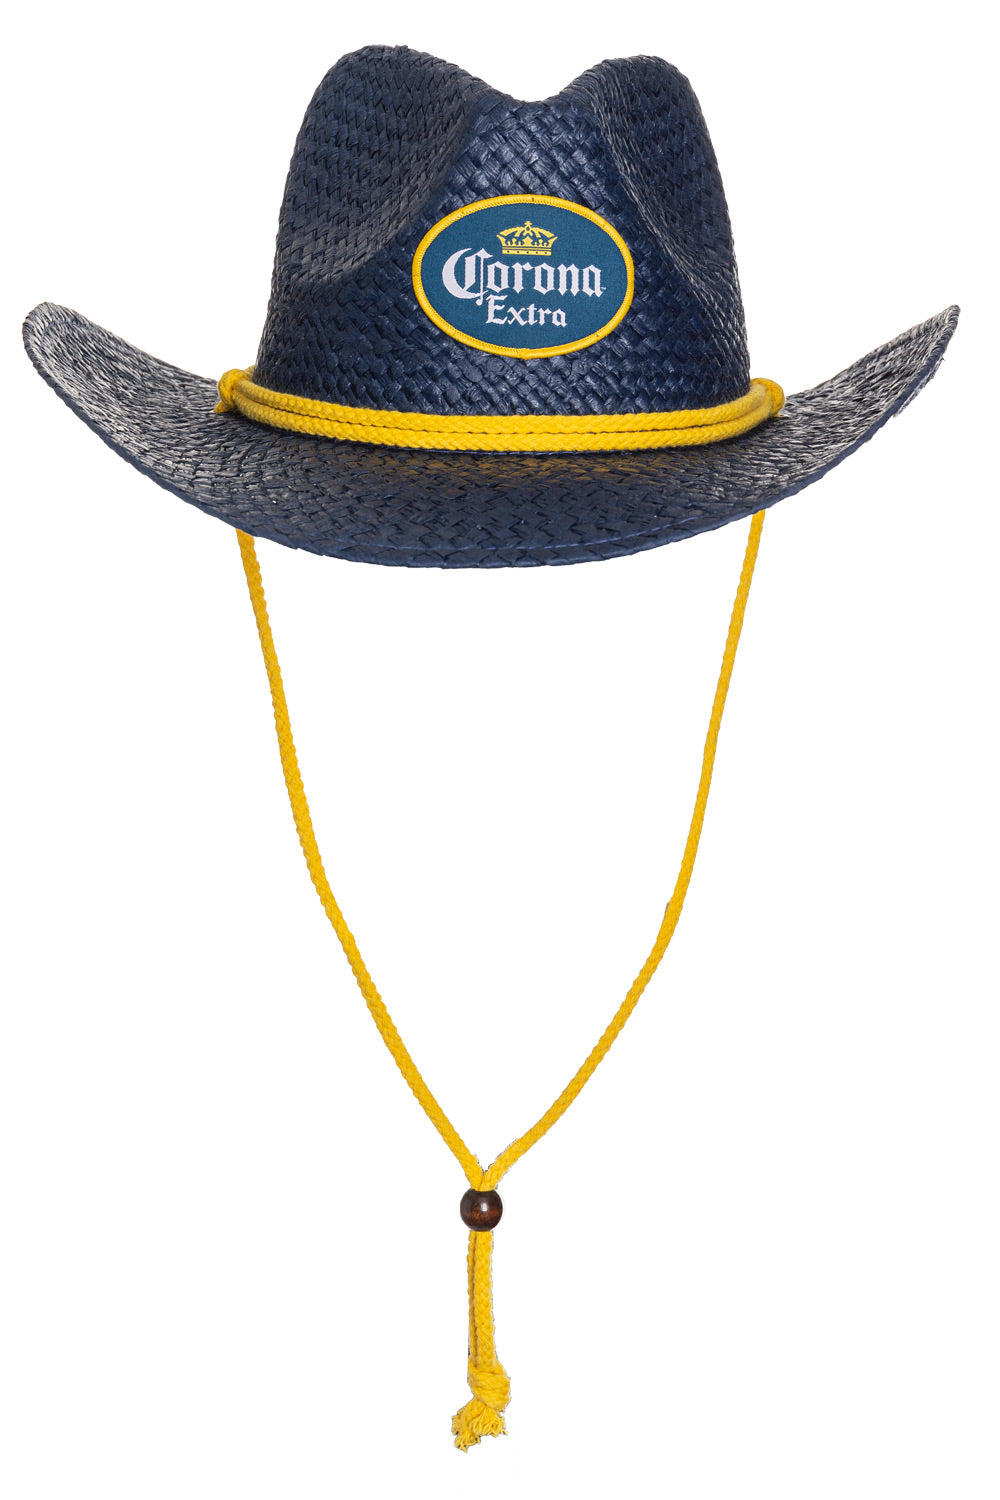 Corona Extra Straw Cowboy Hat - Navy